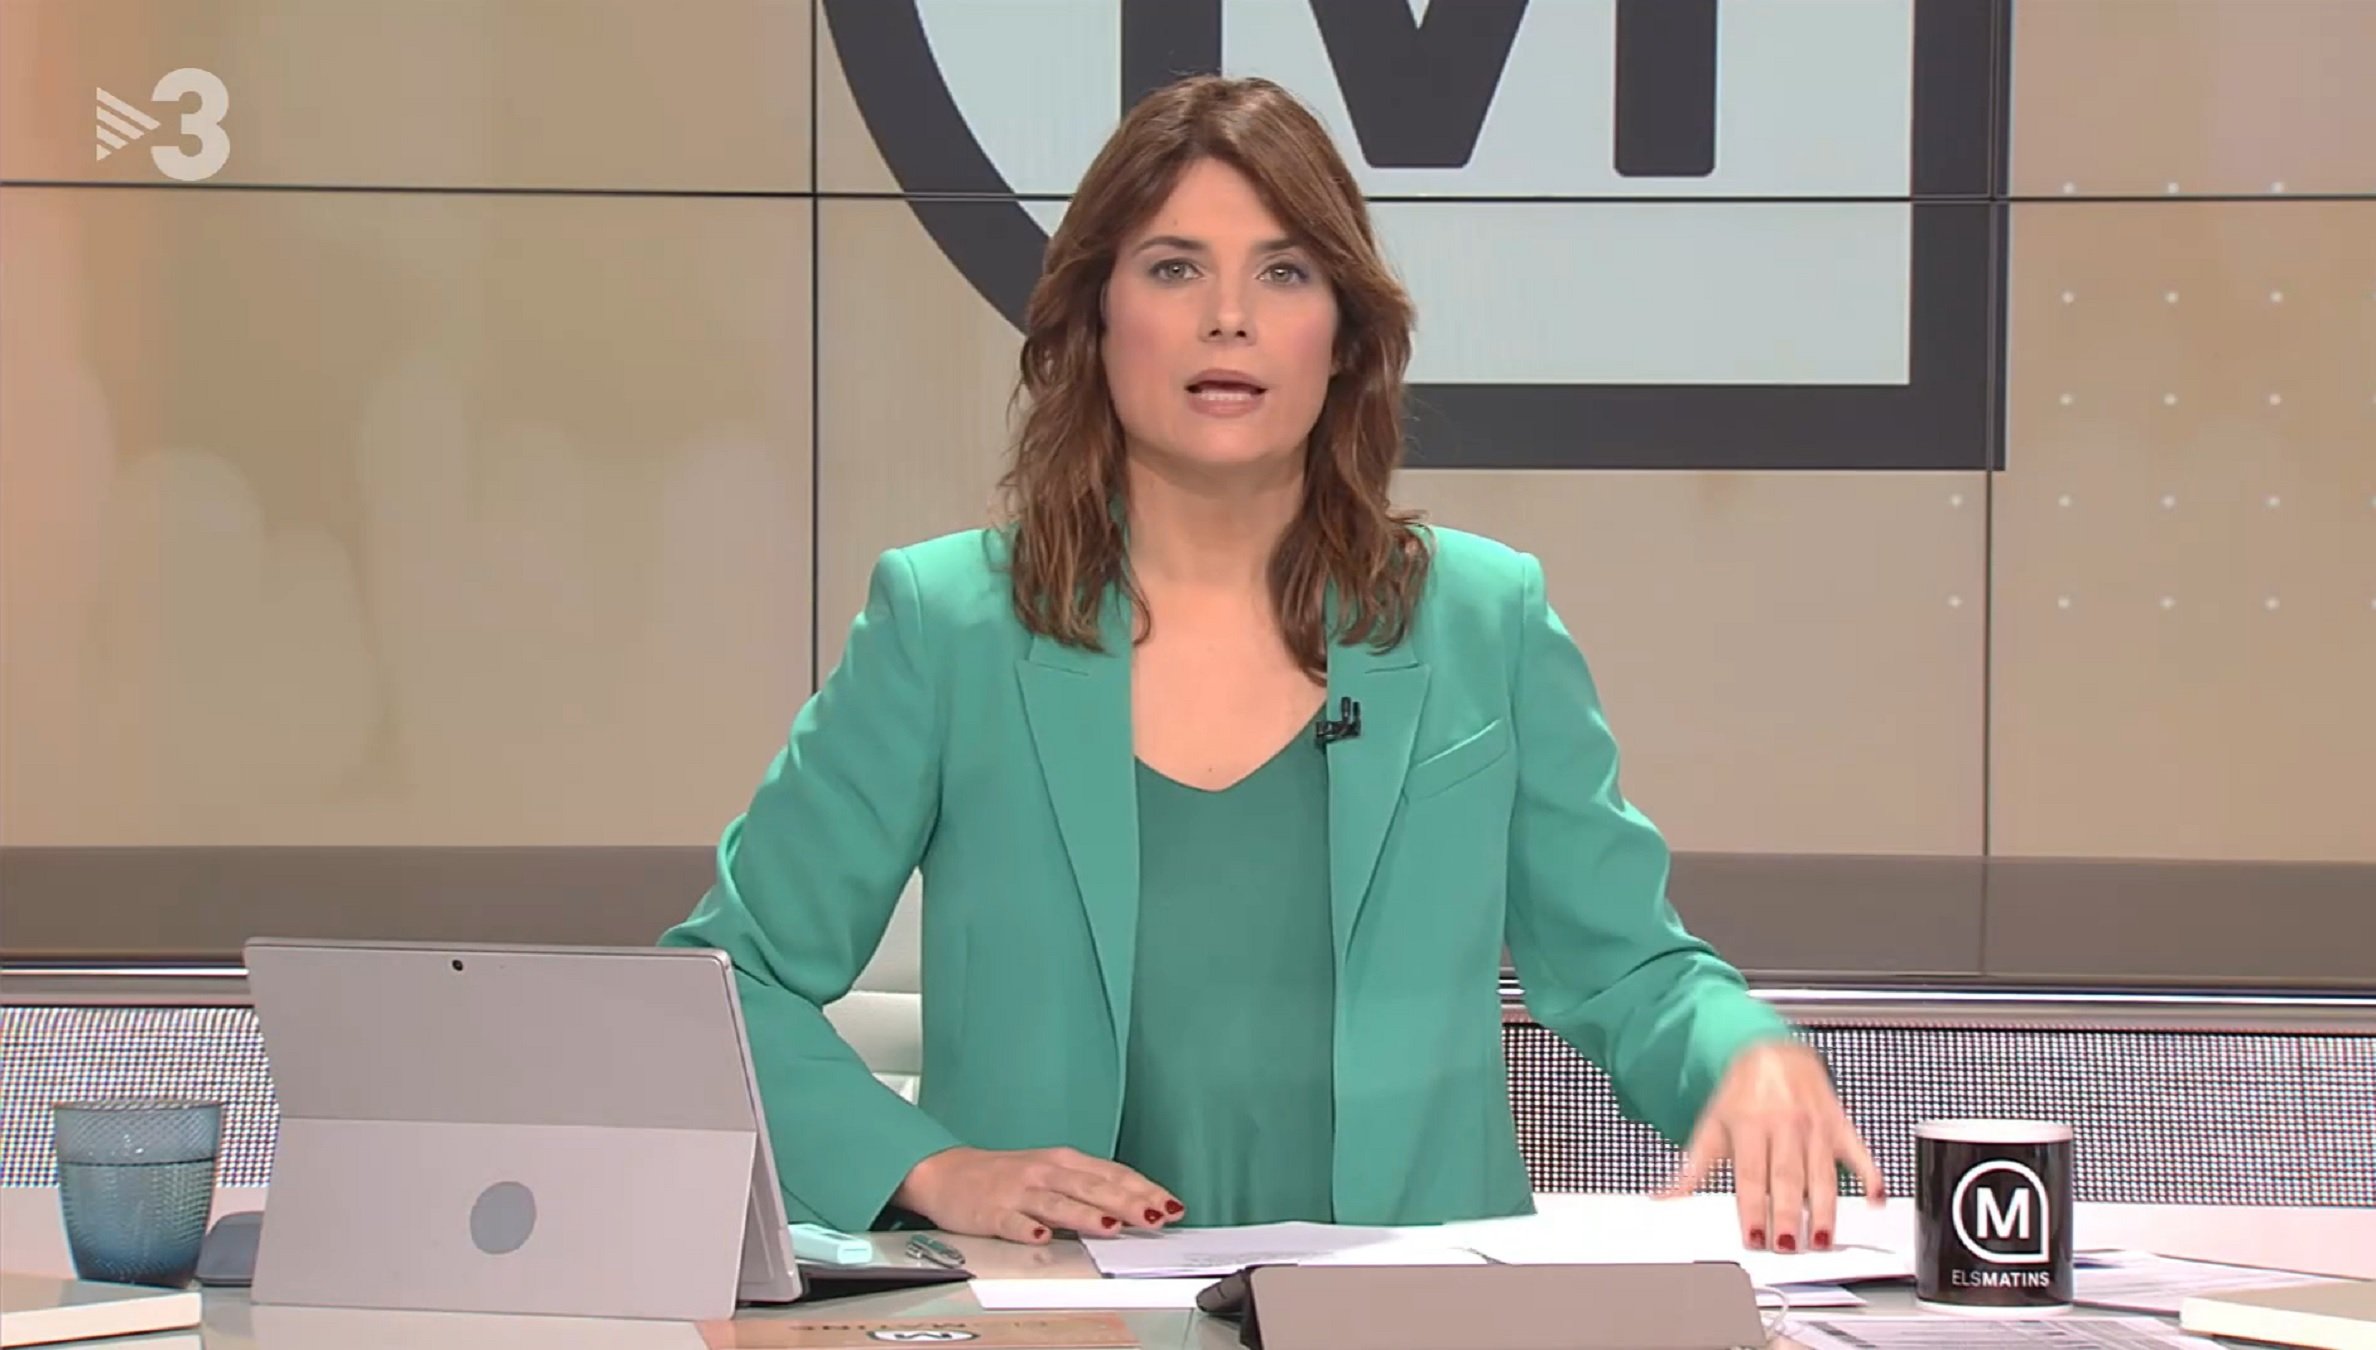 El tertulià que més cobra d''Els matins' de TV3 és castellanoparlant: 11.500 euros